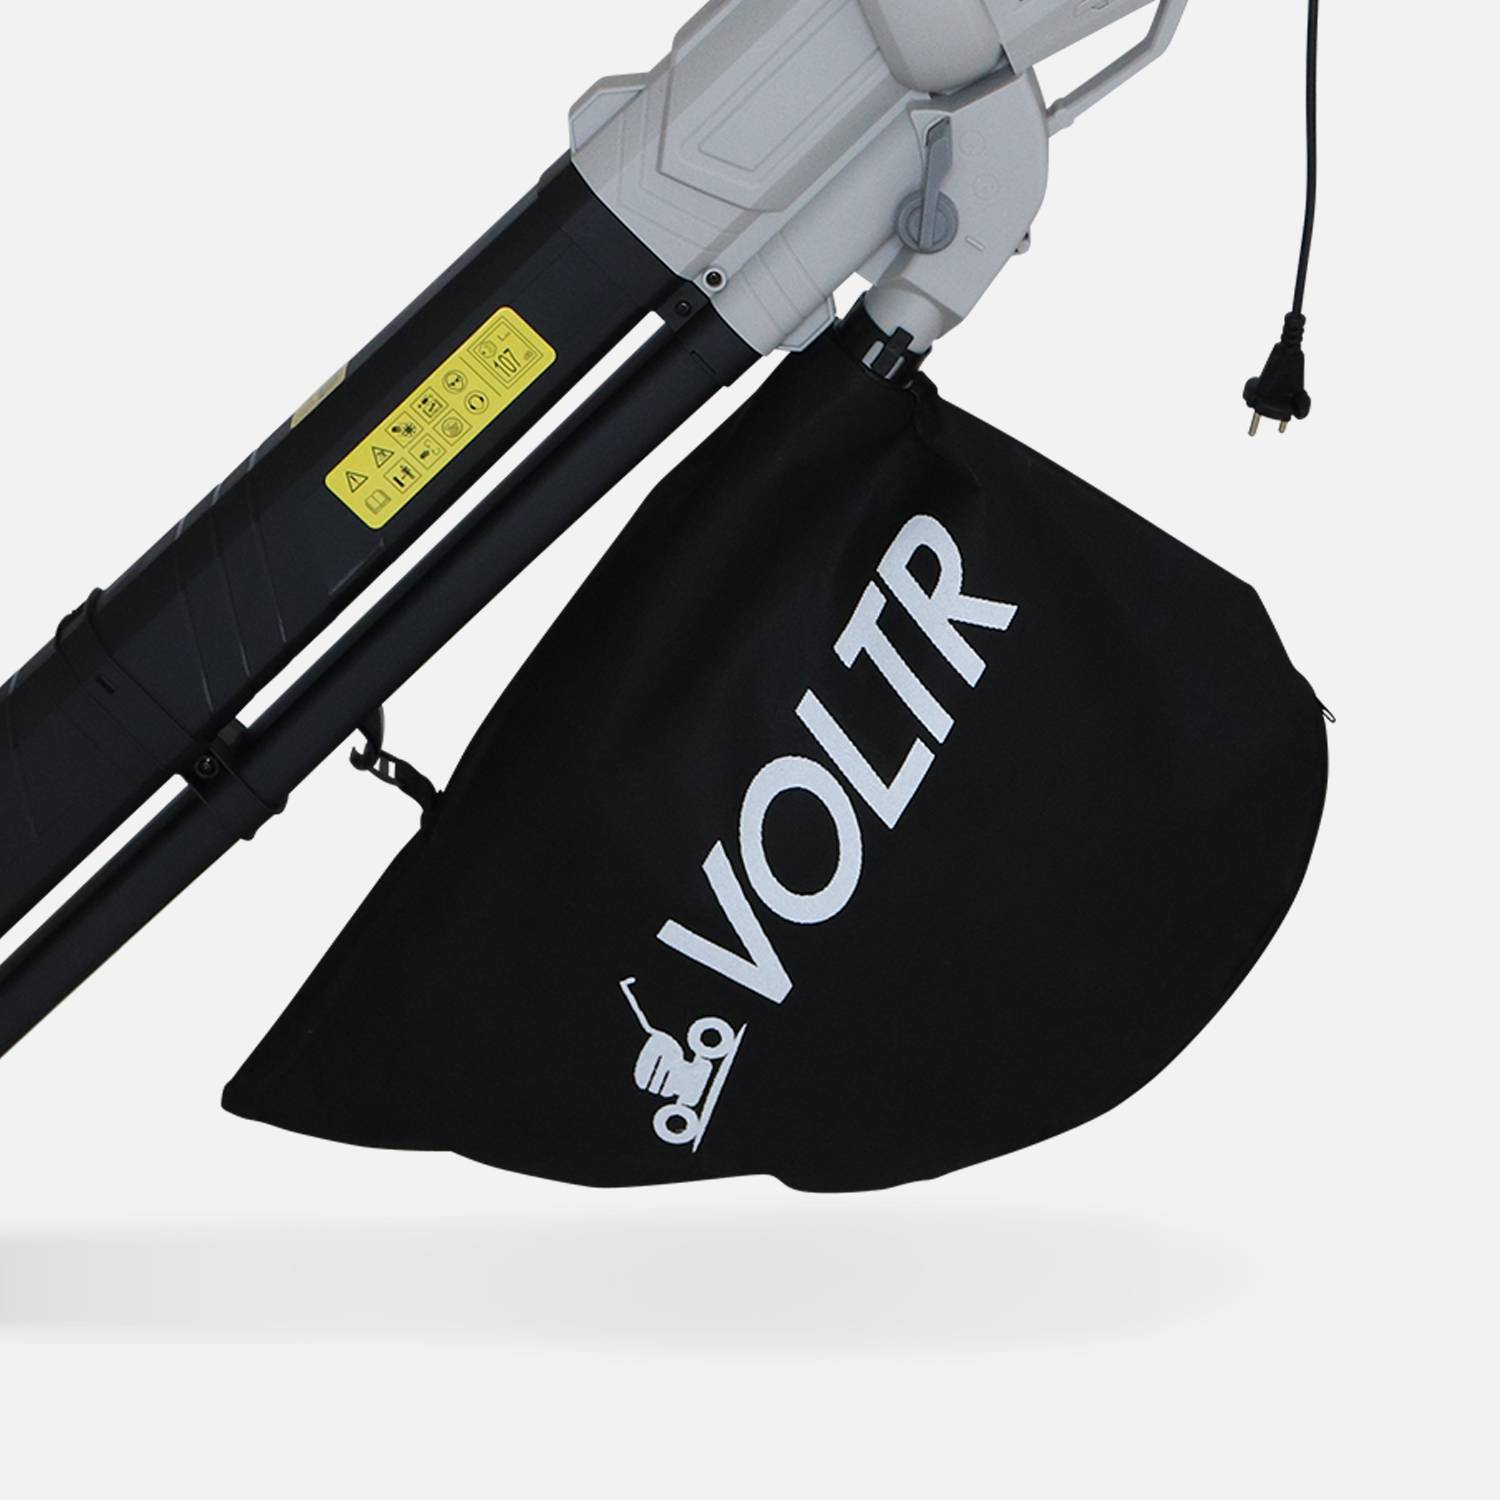 VOLTR aspirador, soprador e triturador de folhas 3000W - Ferramentas eléctricas  Photo4